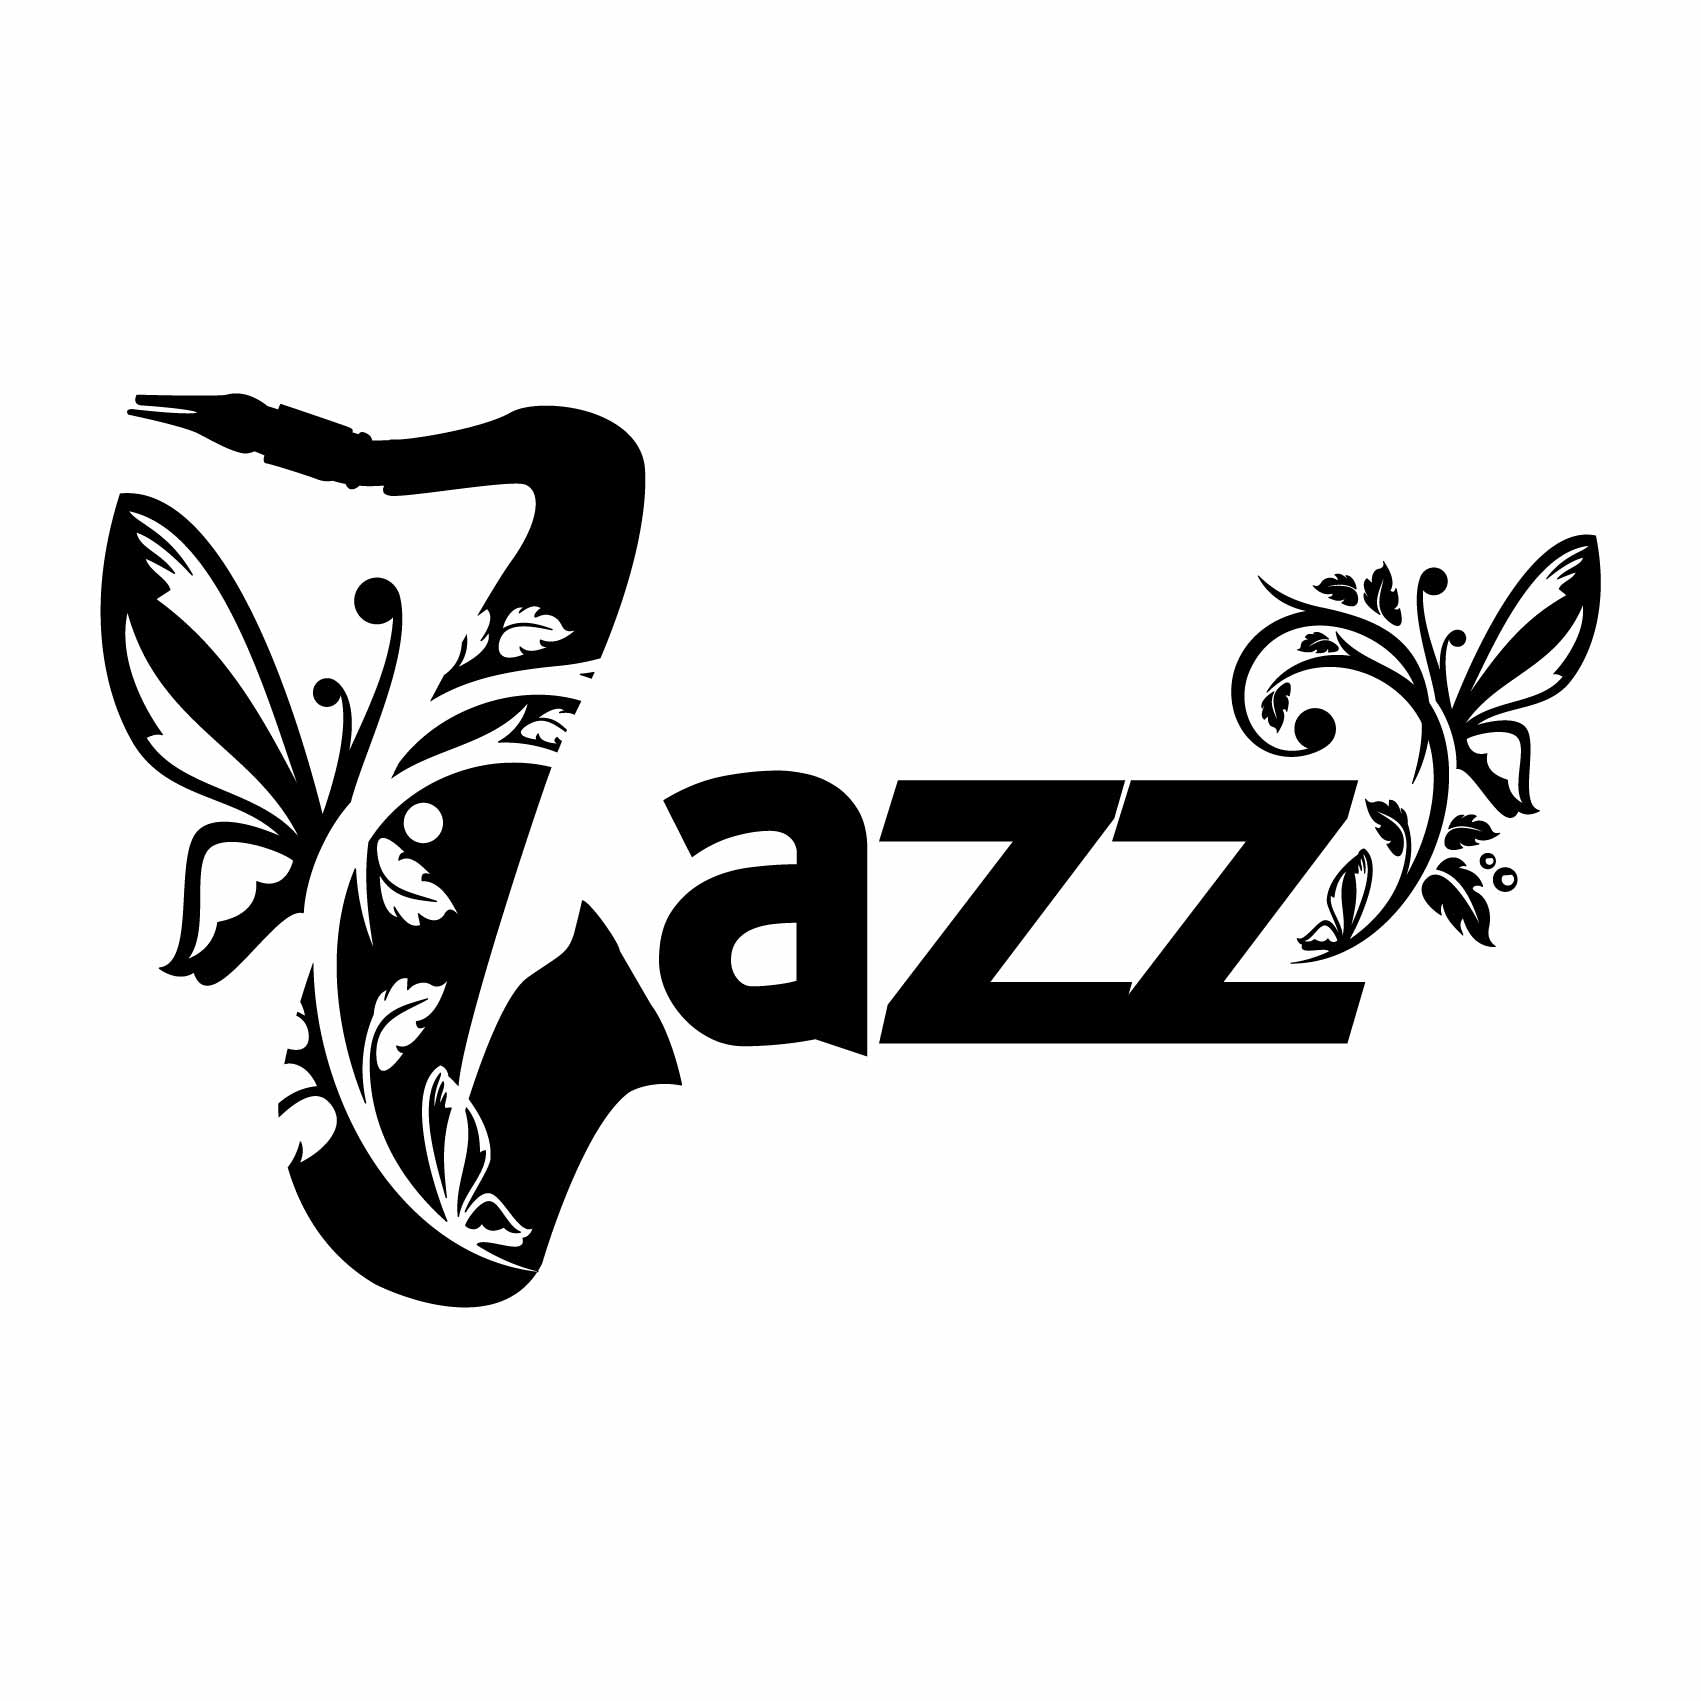 stickers-jazz-ref50musique-autocollant-muraux-musique-sticker-mural-musical-note-notes-deco-salon-chambre-adulte-ado-enfant-(2)